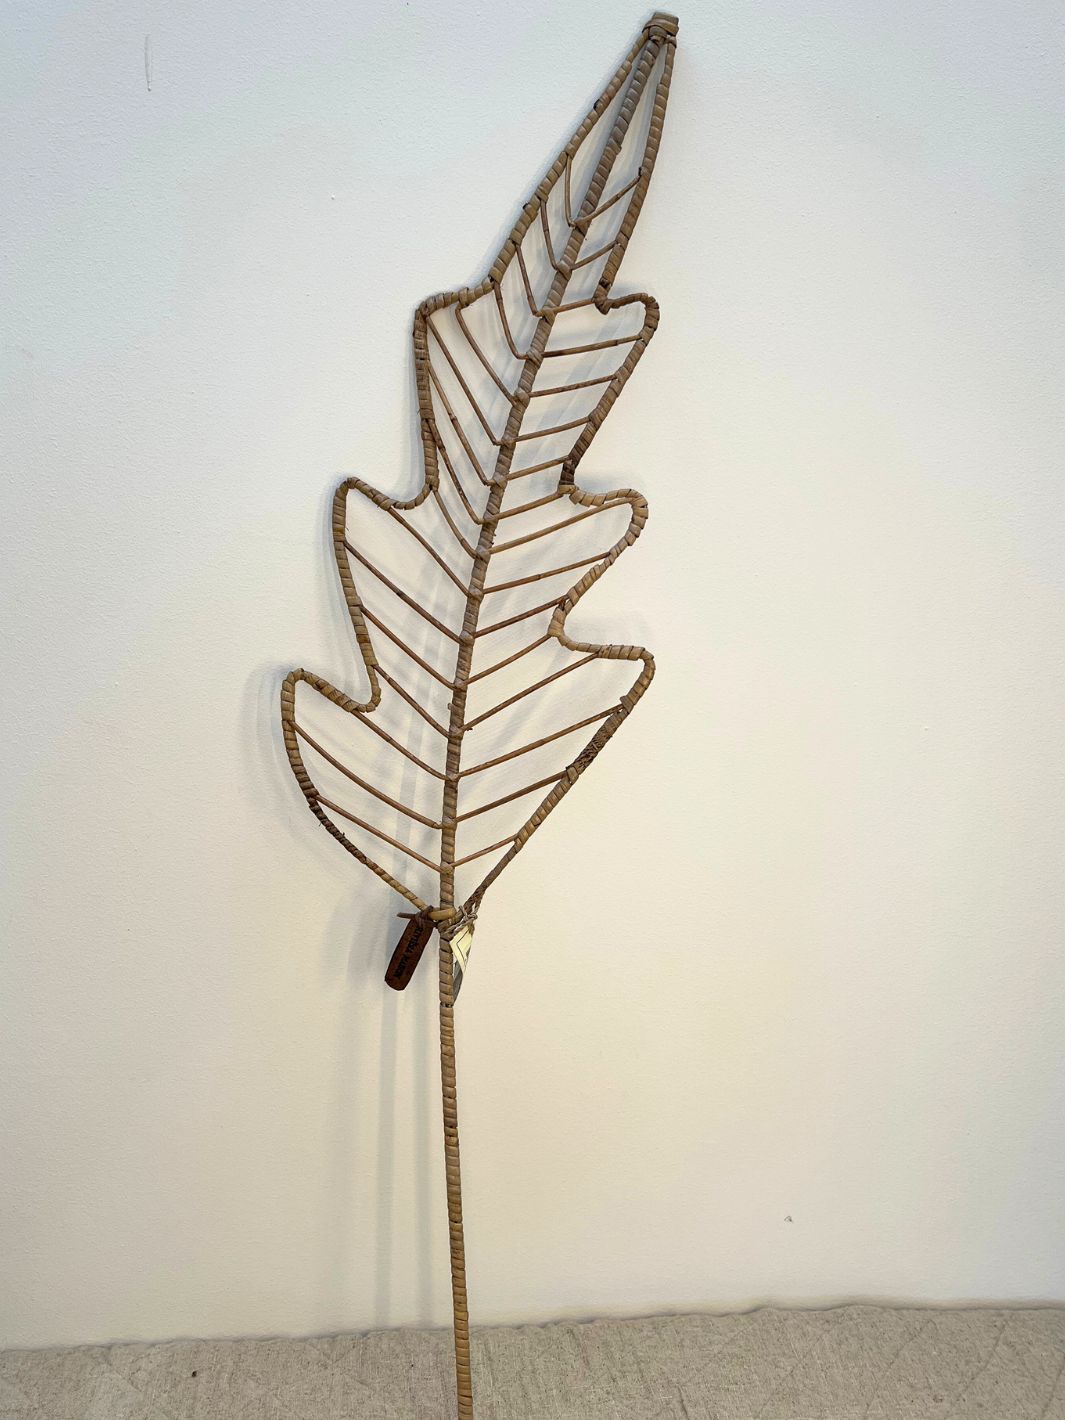 Handgefertigte Rustic Rattan Tropicana Dekoration Leaf von Rivièra Maison für die Vase oder als Wanddekoration – Perfekte Ergänzung für moderne, rustikale und Strandhaus-Stile